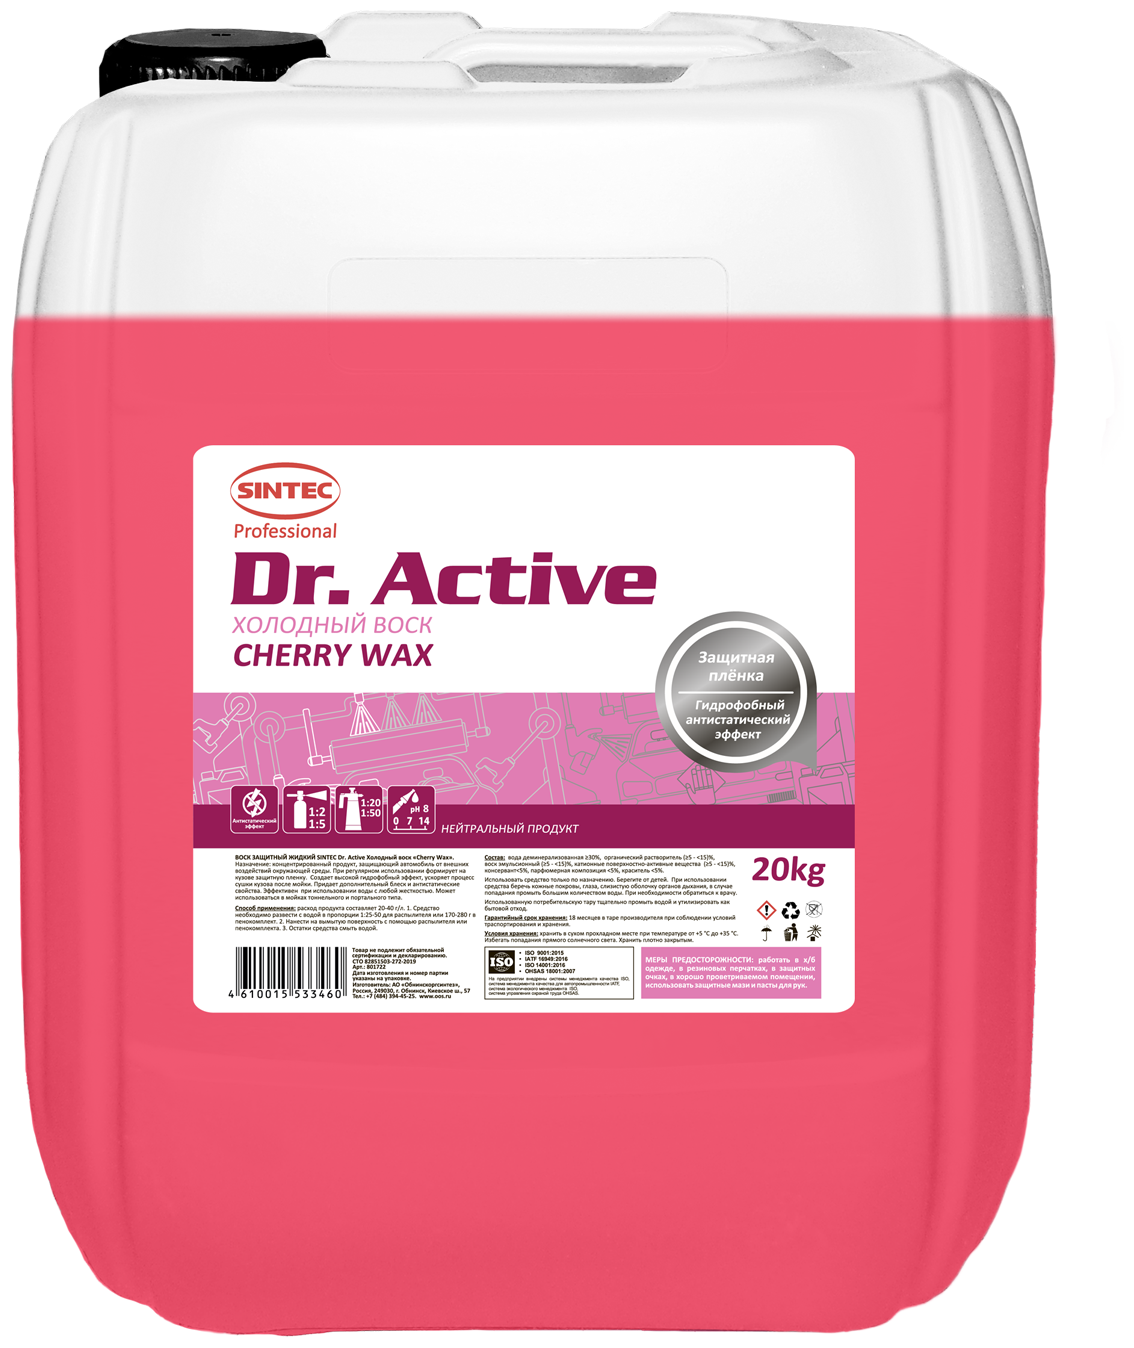 Воск Для Кузова Sintec Dr. Active (20Кг) Cherry Wax Концентрат SINTEC арт. 801722